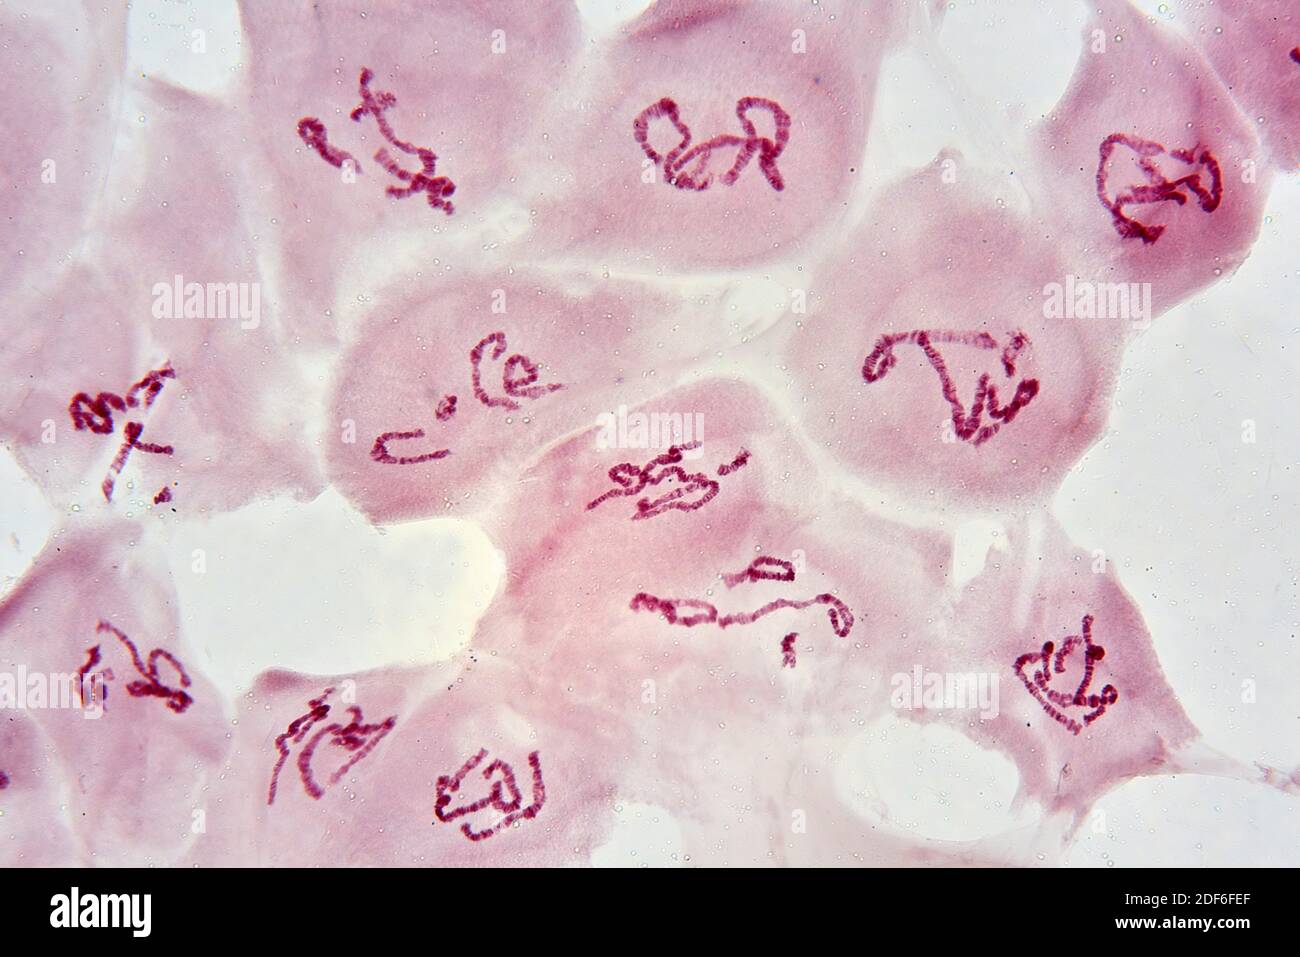 Chromosomes e imágenes de alta resolución - Alamy